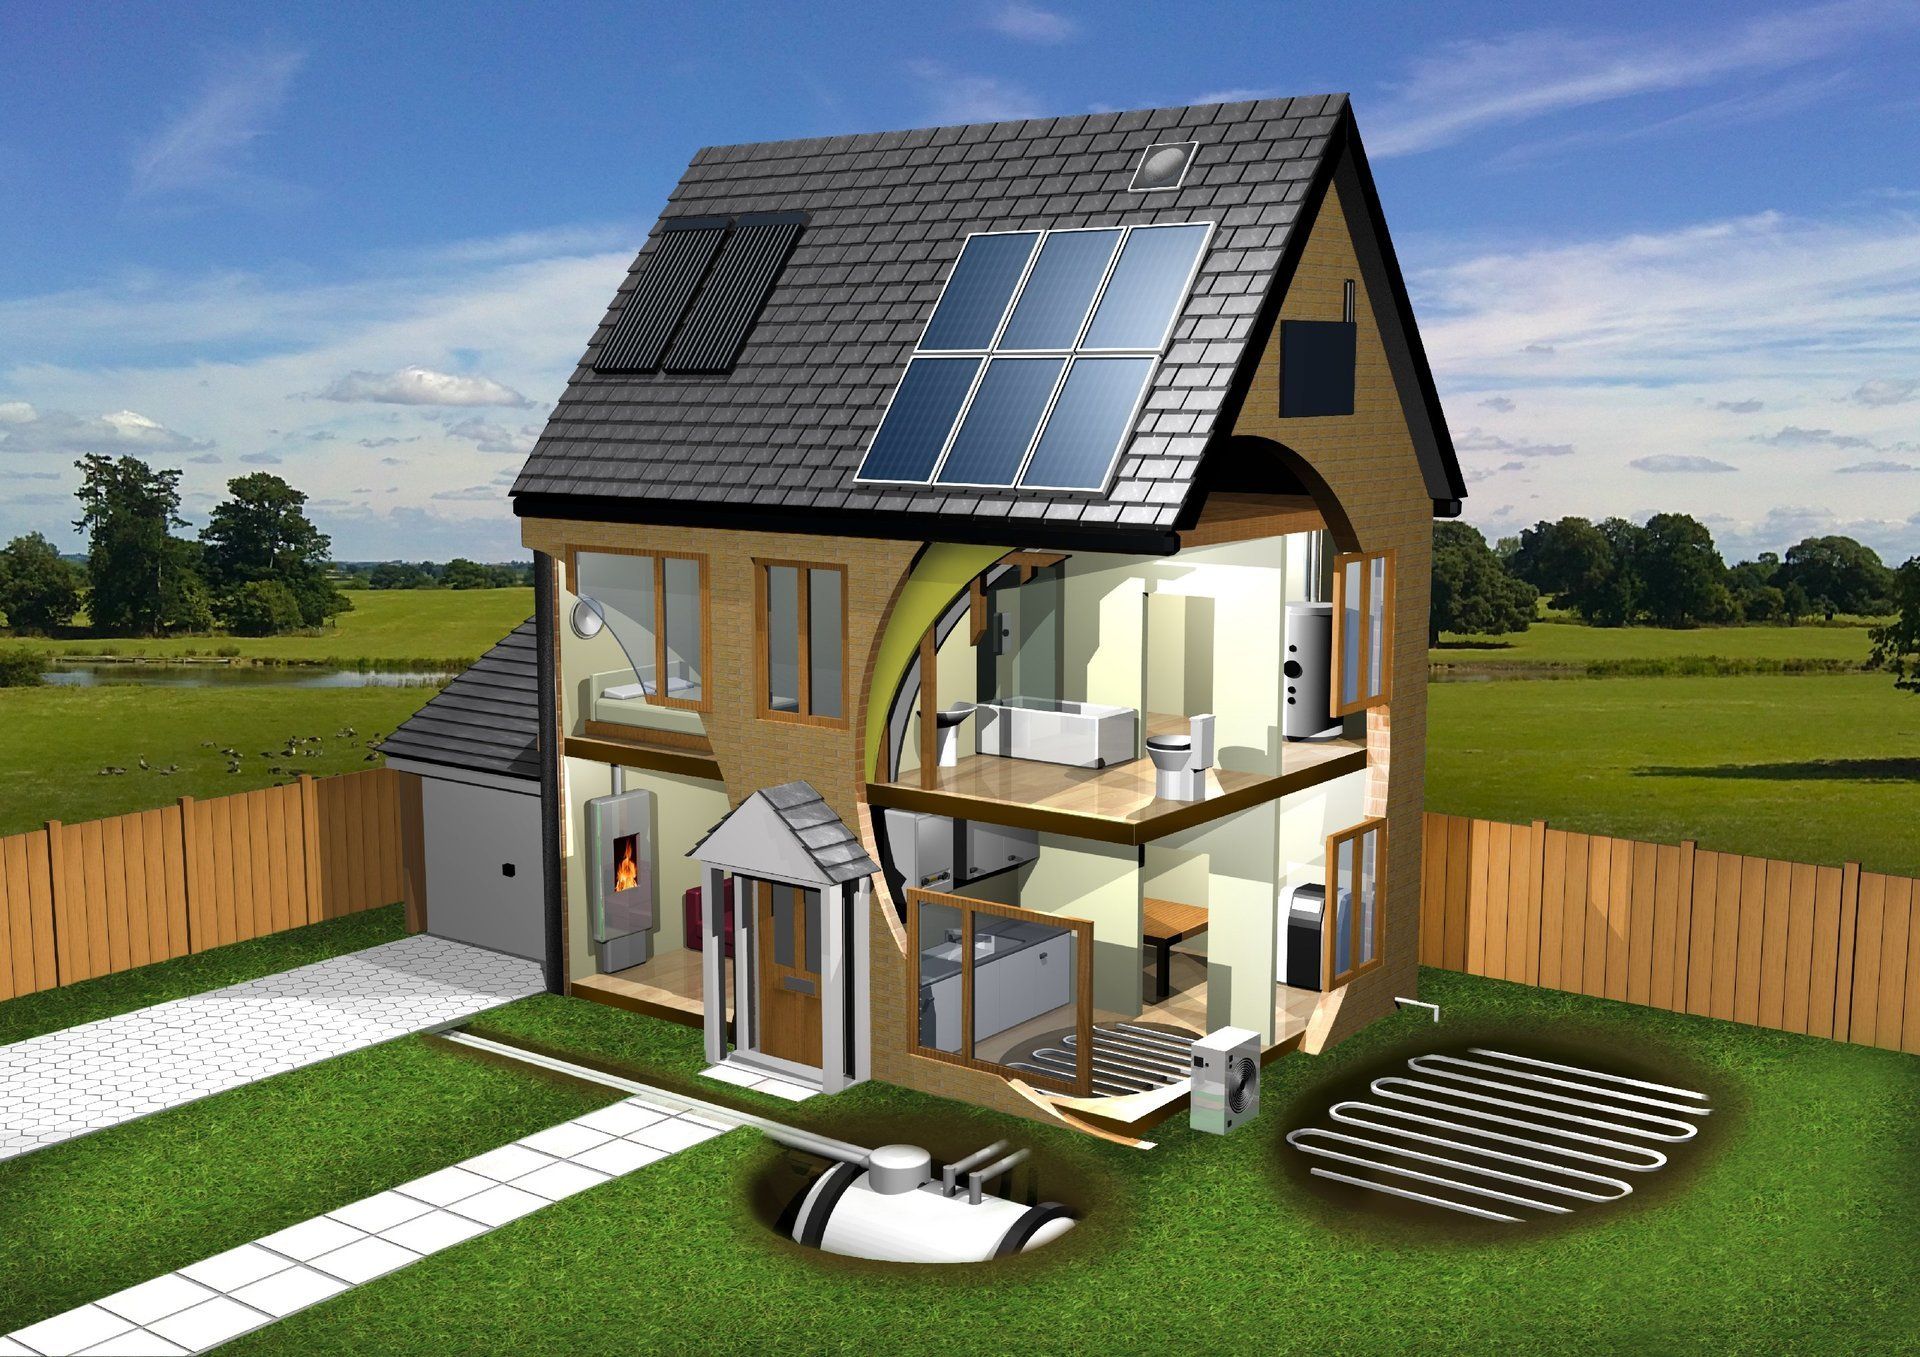 Тало дом. Passive House («пассивный дом»). Пассивный энергоэффективный дом. Экологичный дом. Энергосберегающий дом.